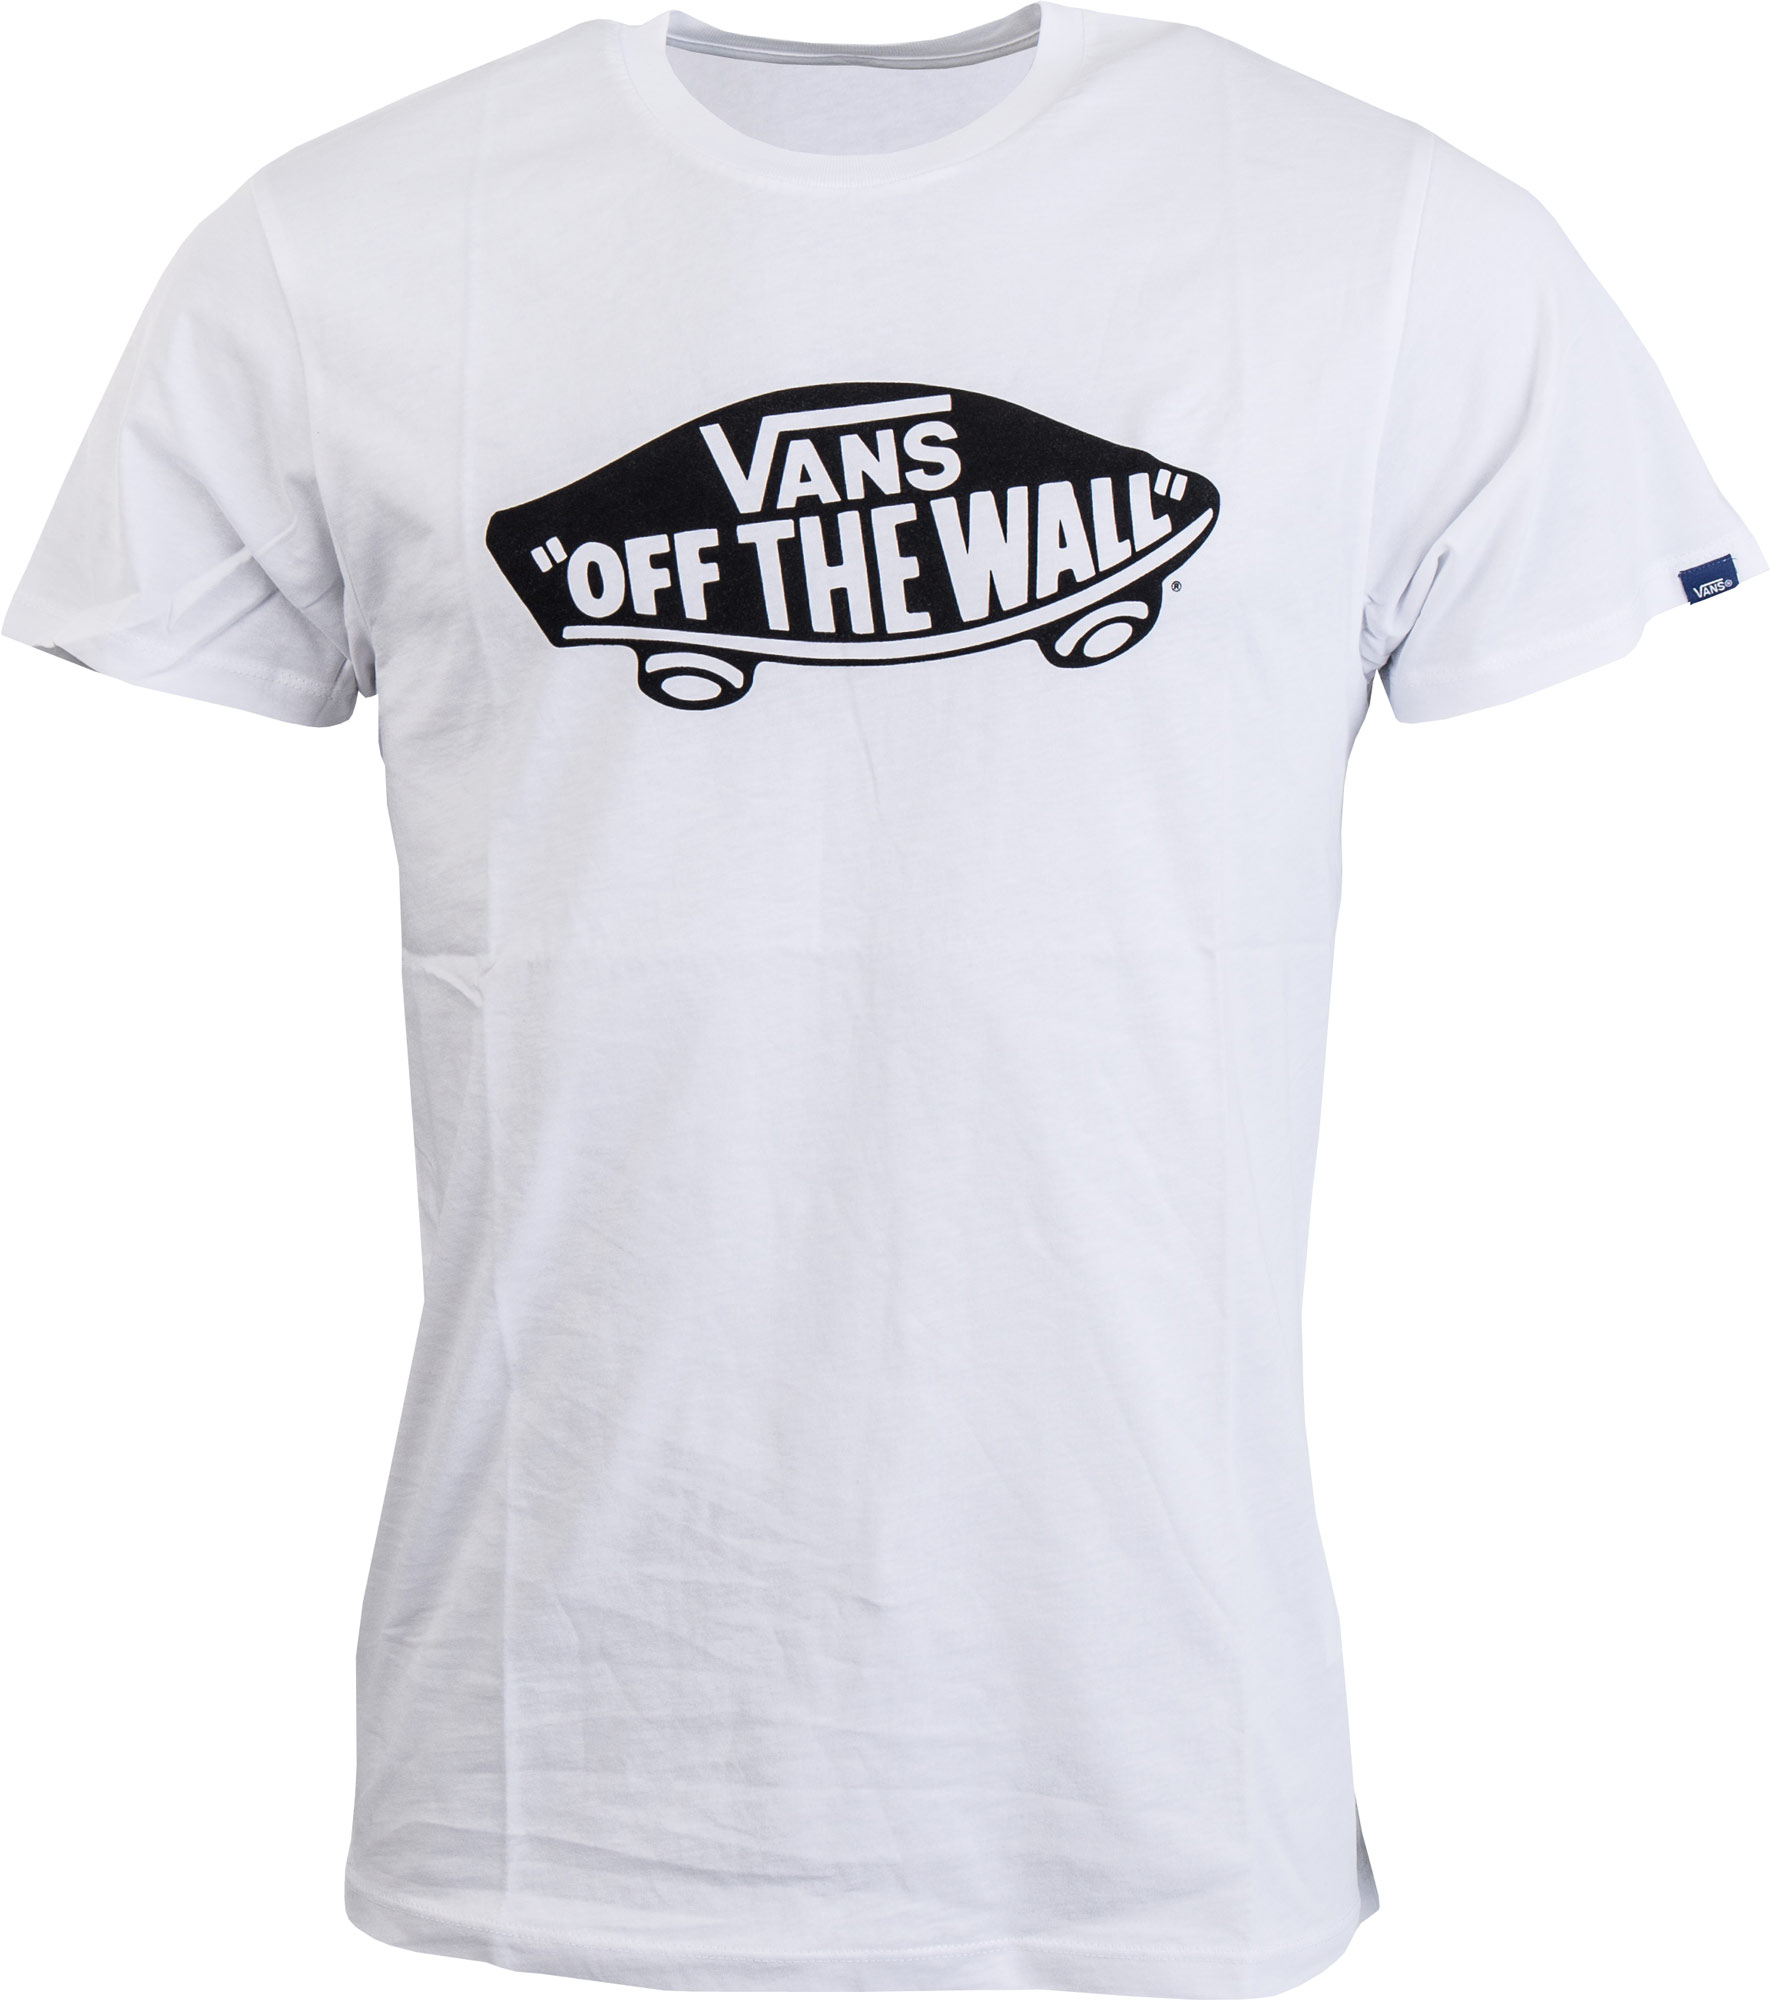 VANS OTW - Men's T-shirt